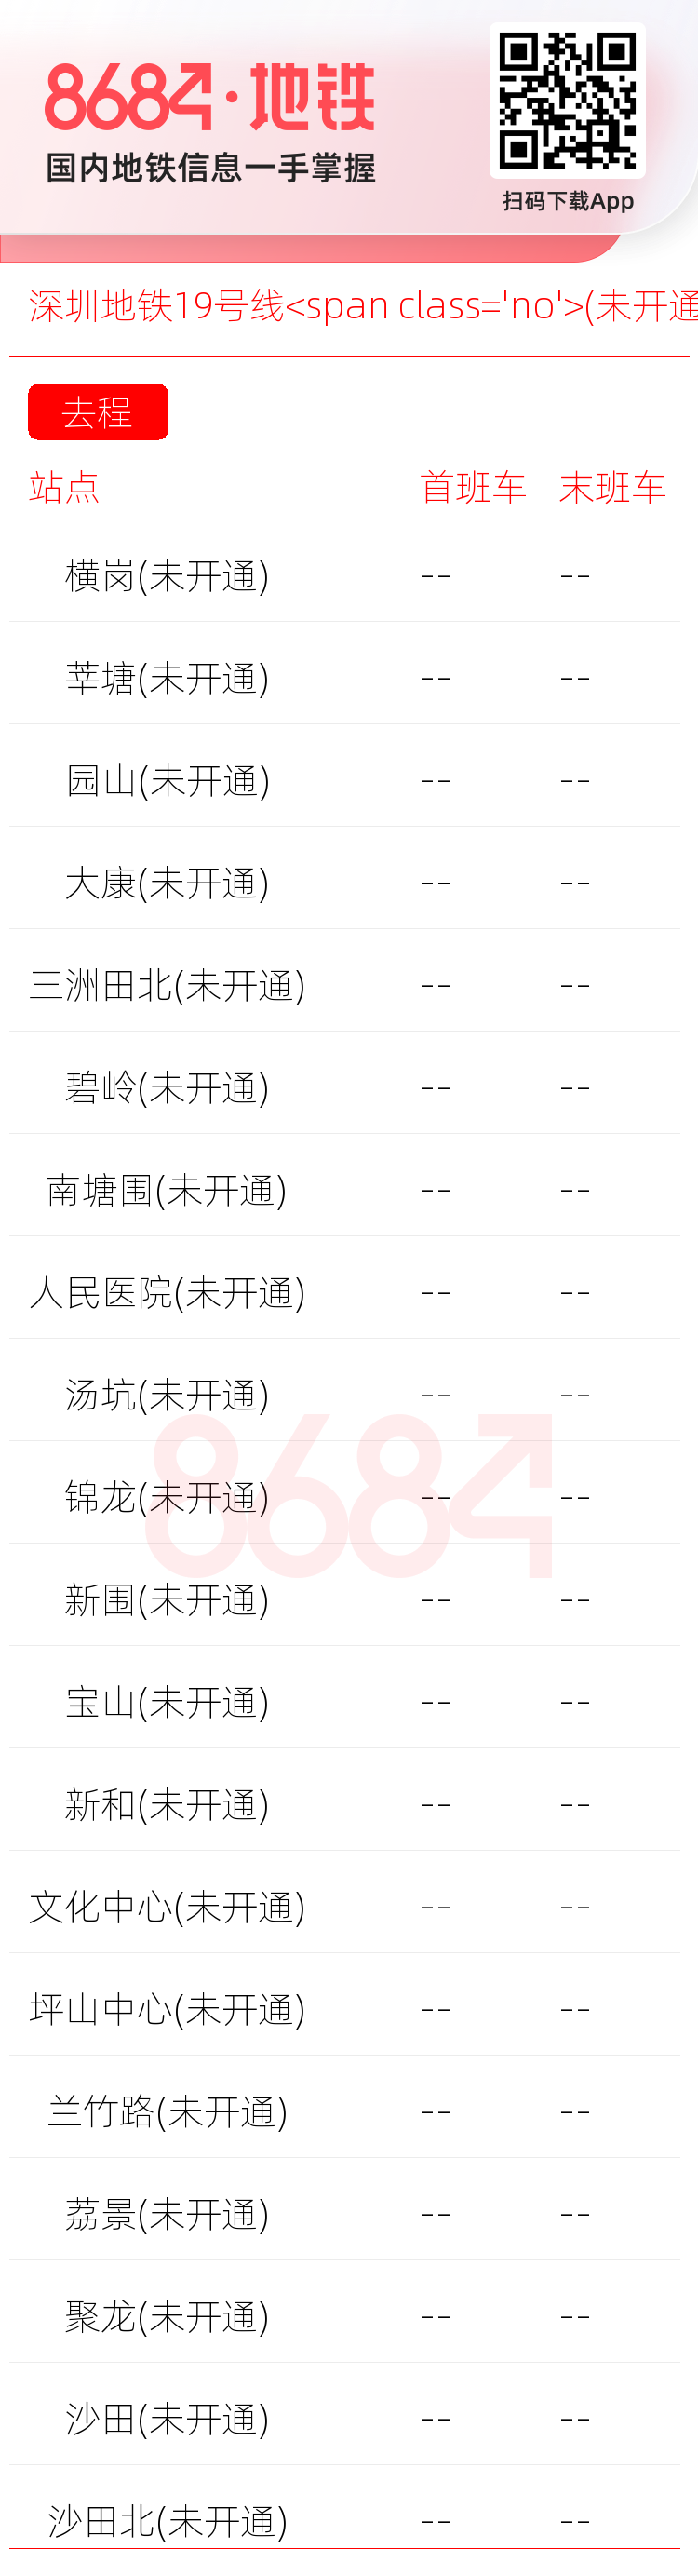 深圳地铁19号线<span class='no'>(未开通)</span>运营时间表